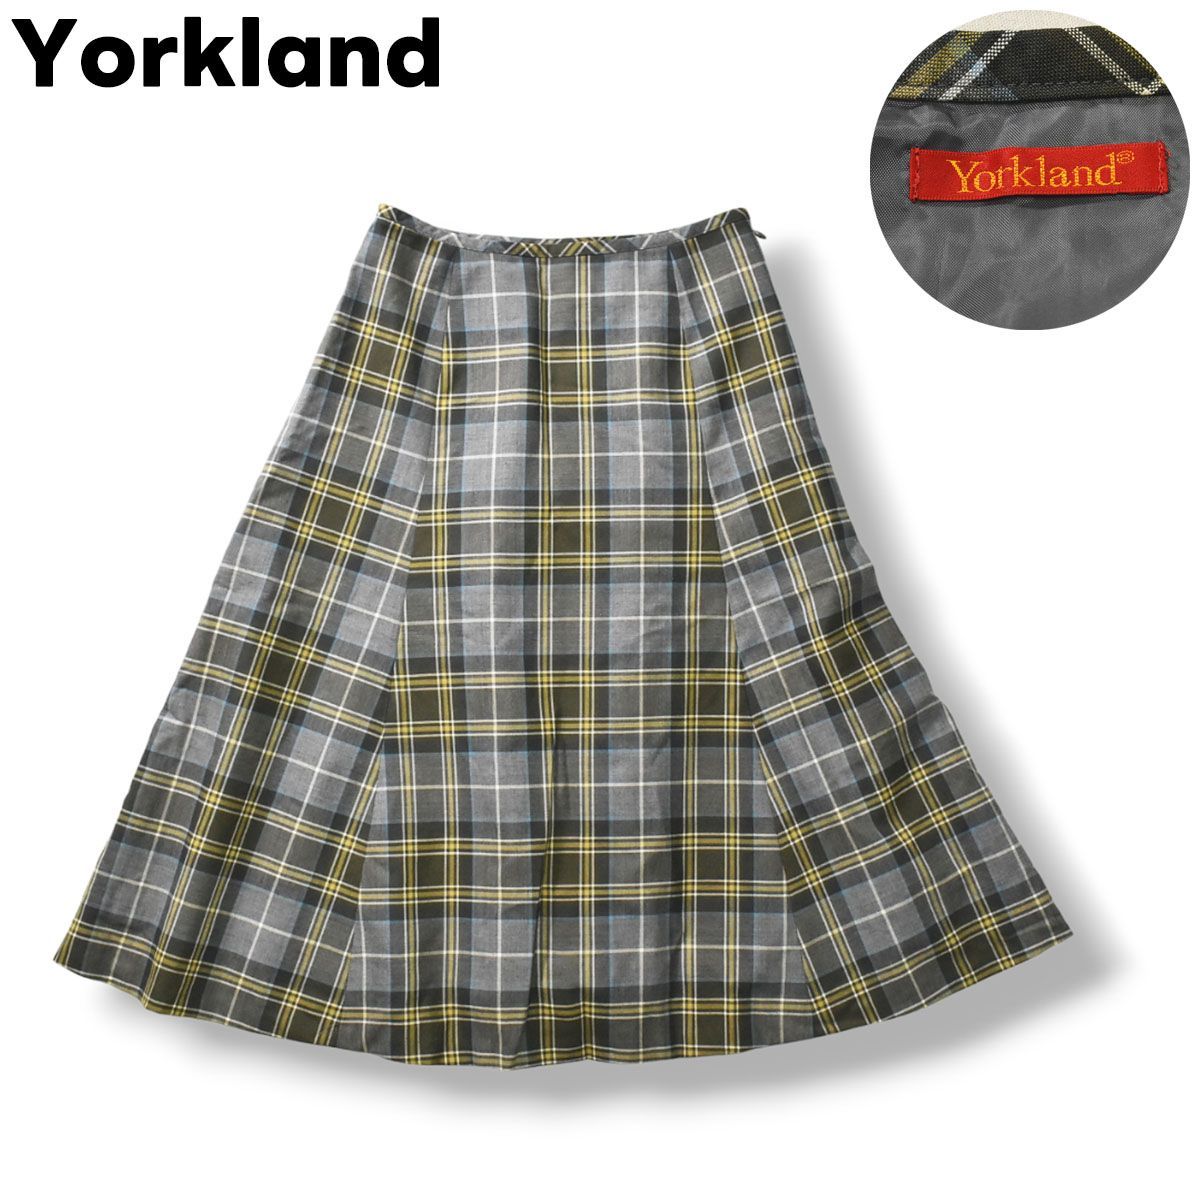 Yorkland ヨークランド スカート チェック柄 フレアひざ丈スカート 